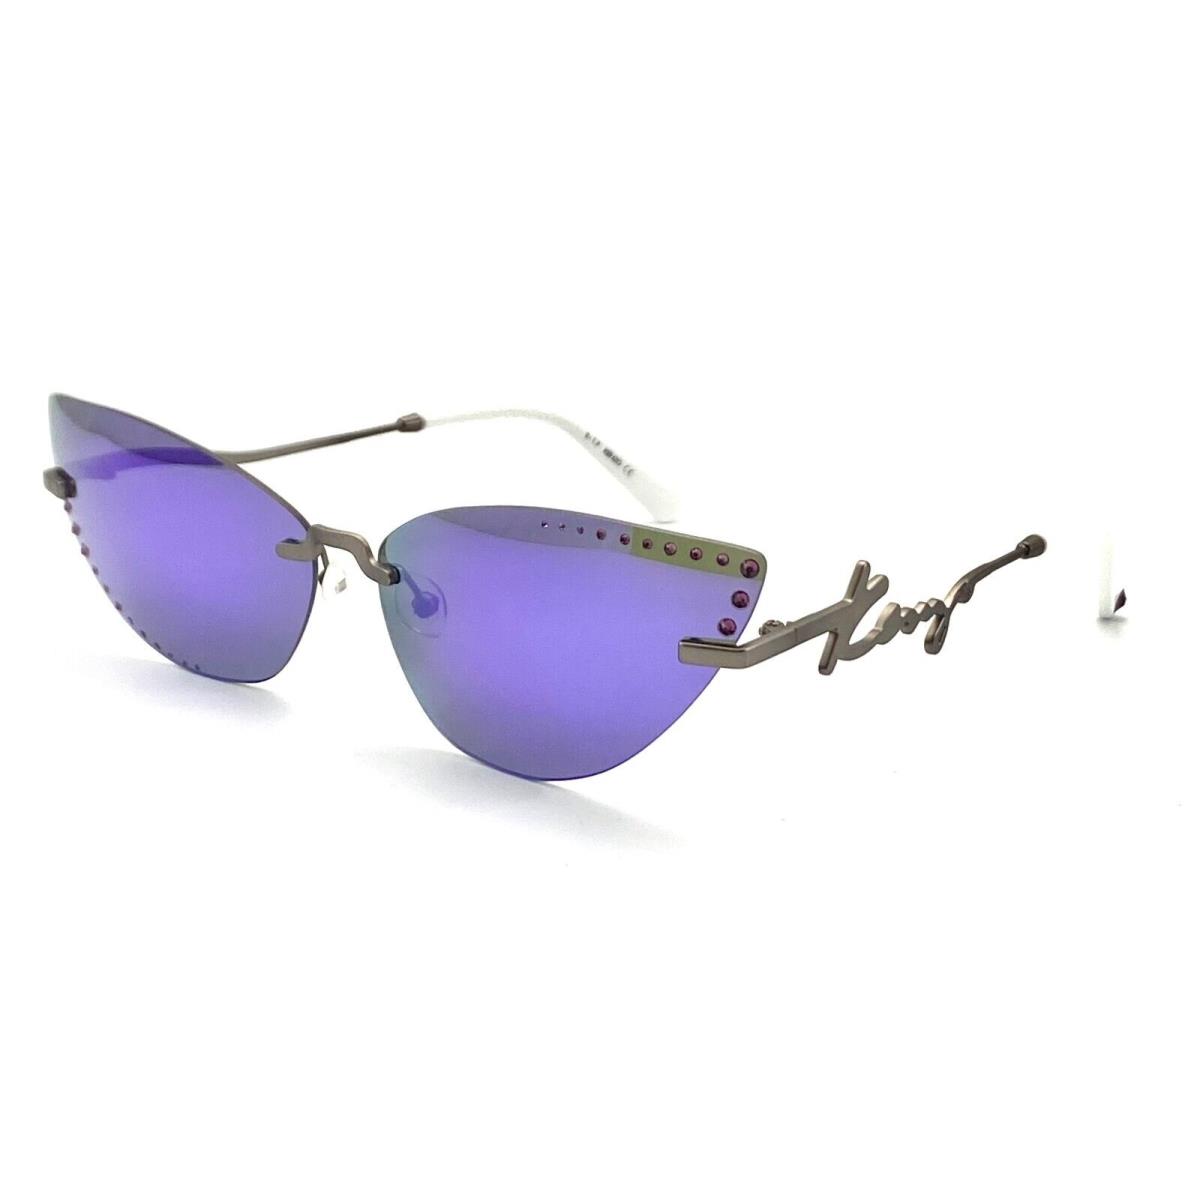 Kenzo Paris KZ40004U 13Z Silver Sunglasses 67-14 140 W/case